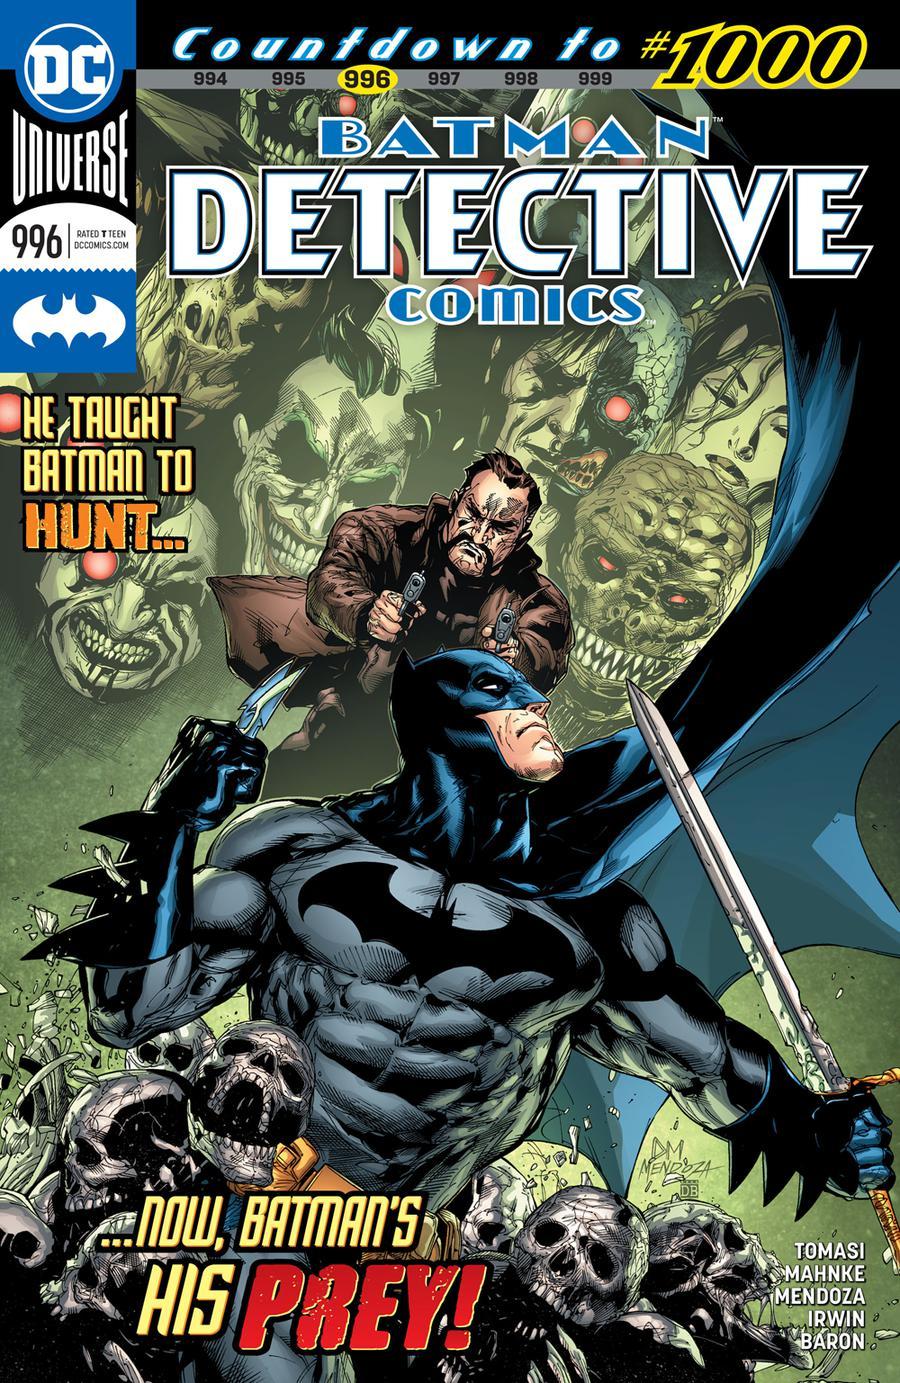 Detective Comics Vol. 2 #996